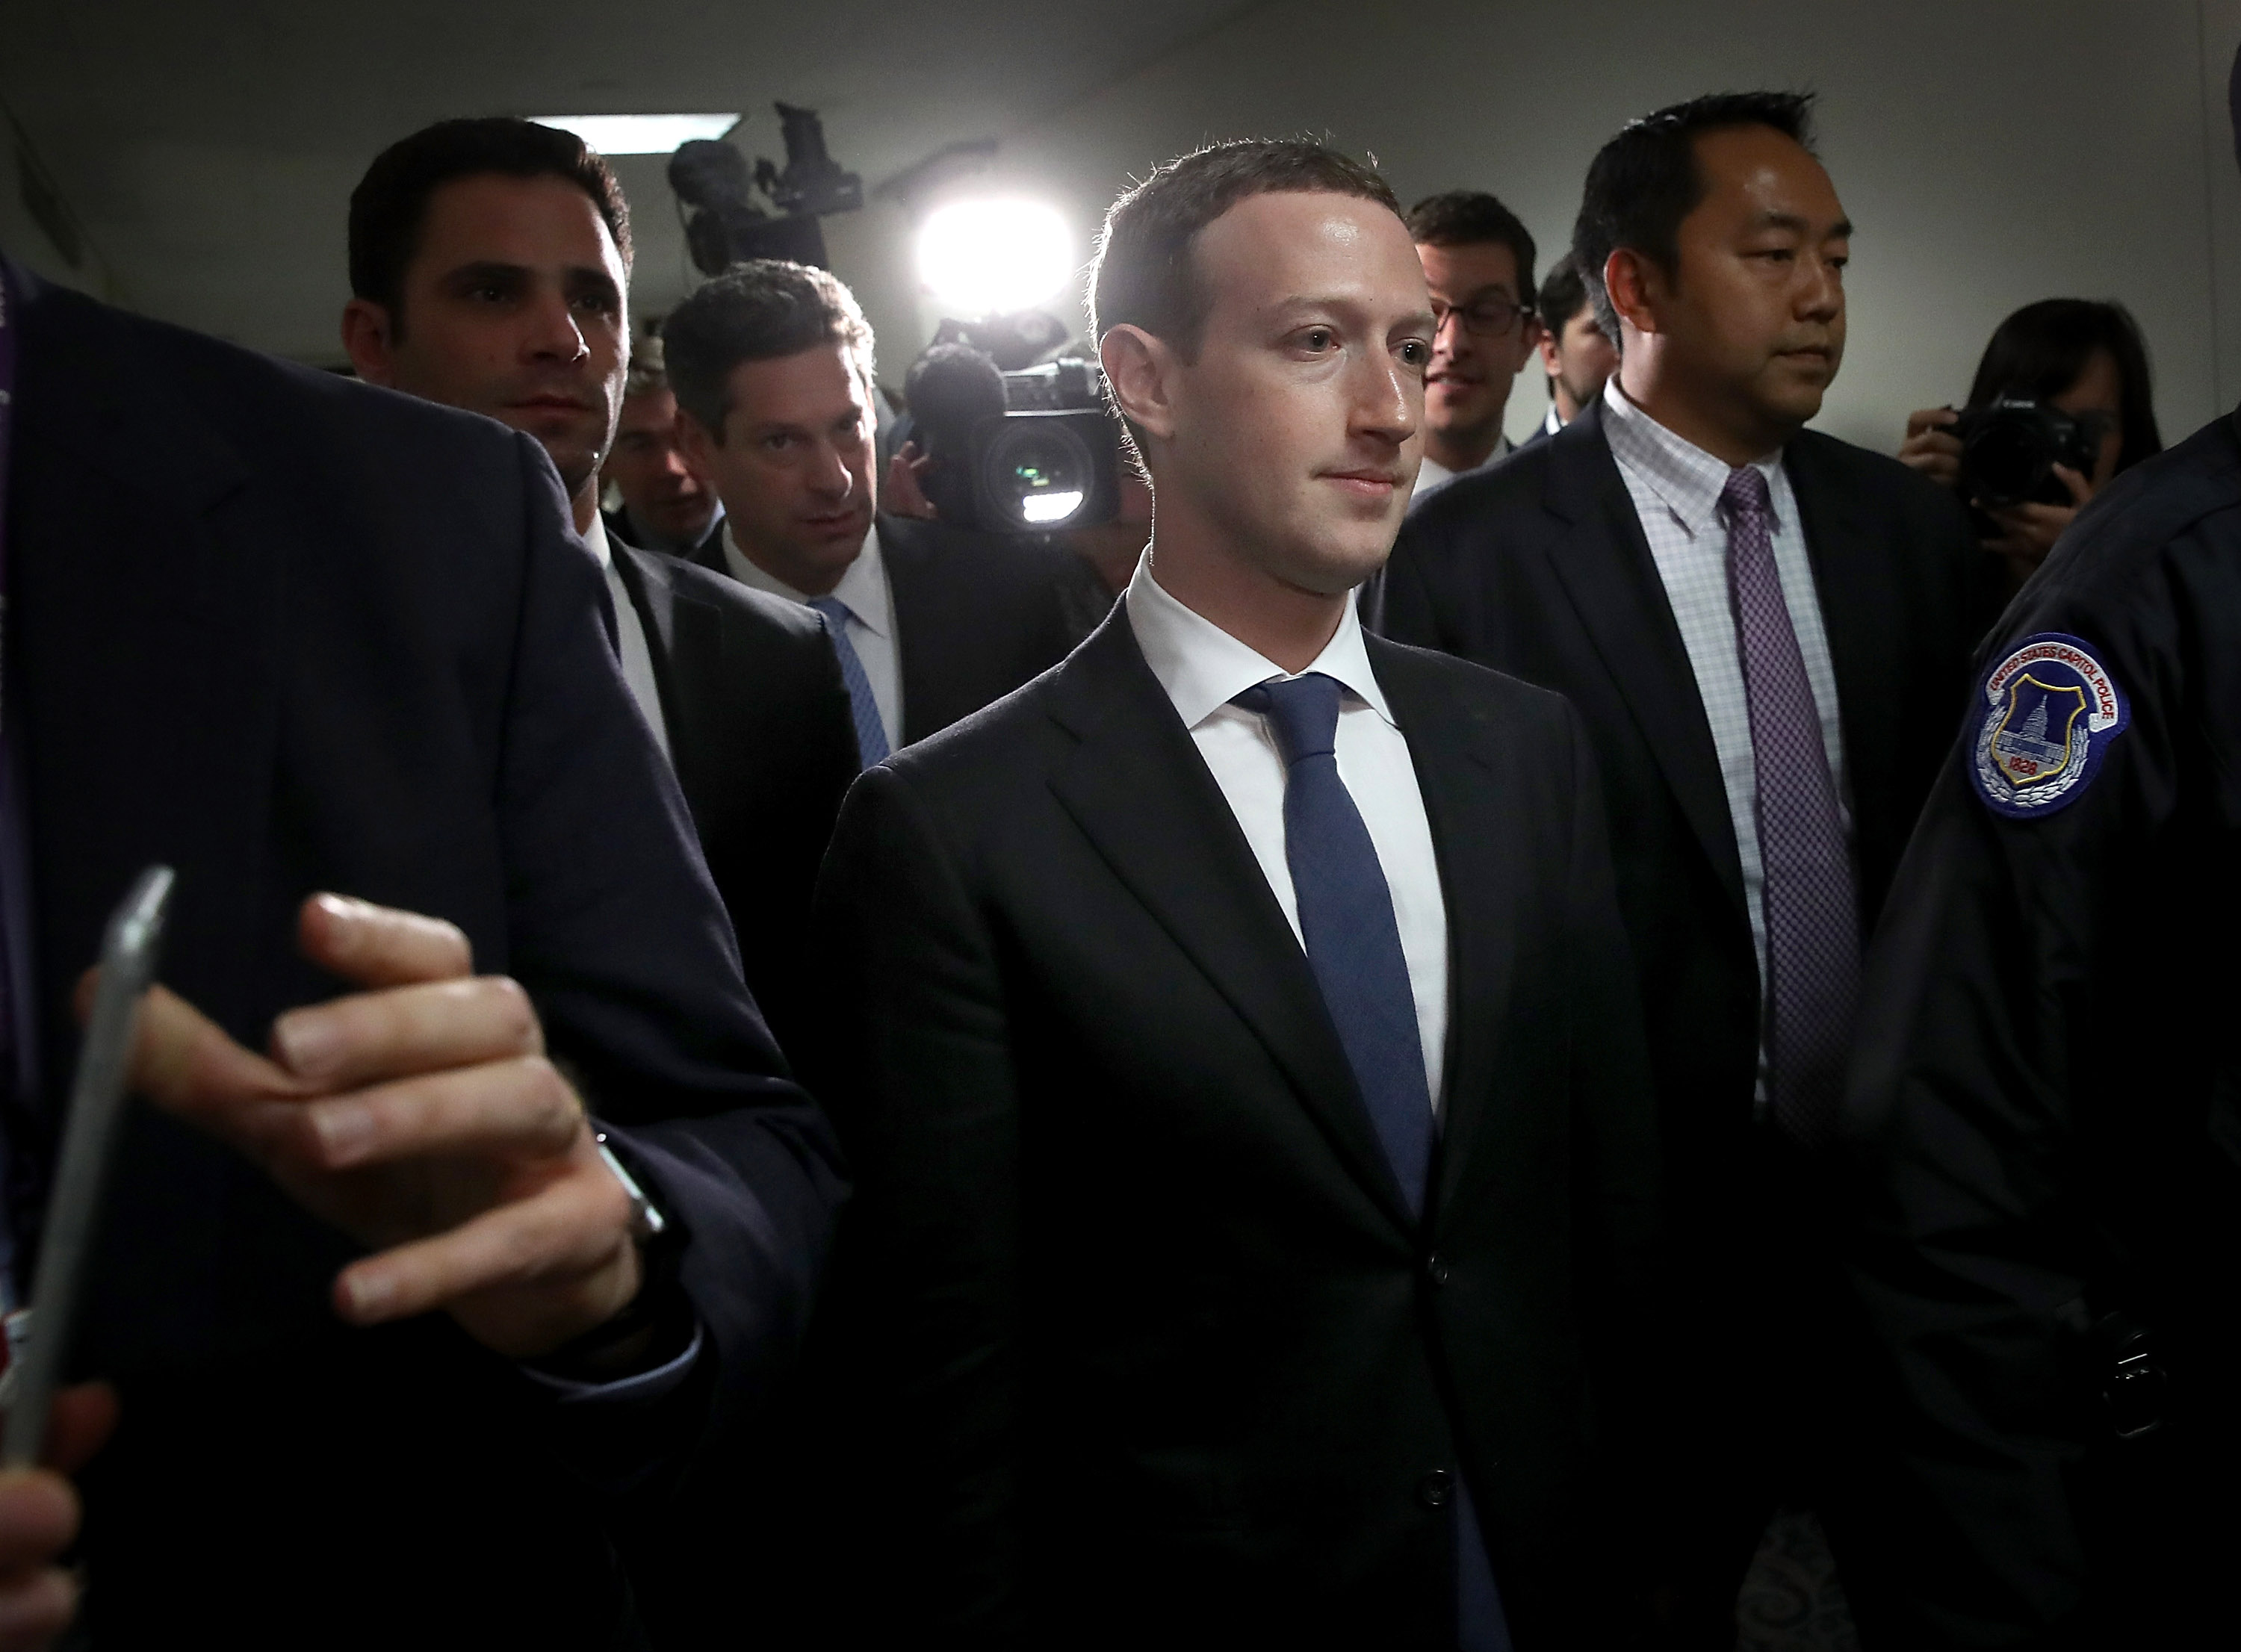 Itt lehet megnézni, hogy izzasztják Mark Zuckerberget a Kongresszusban